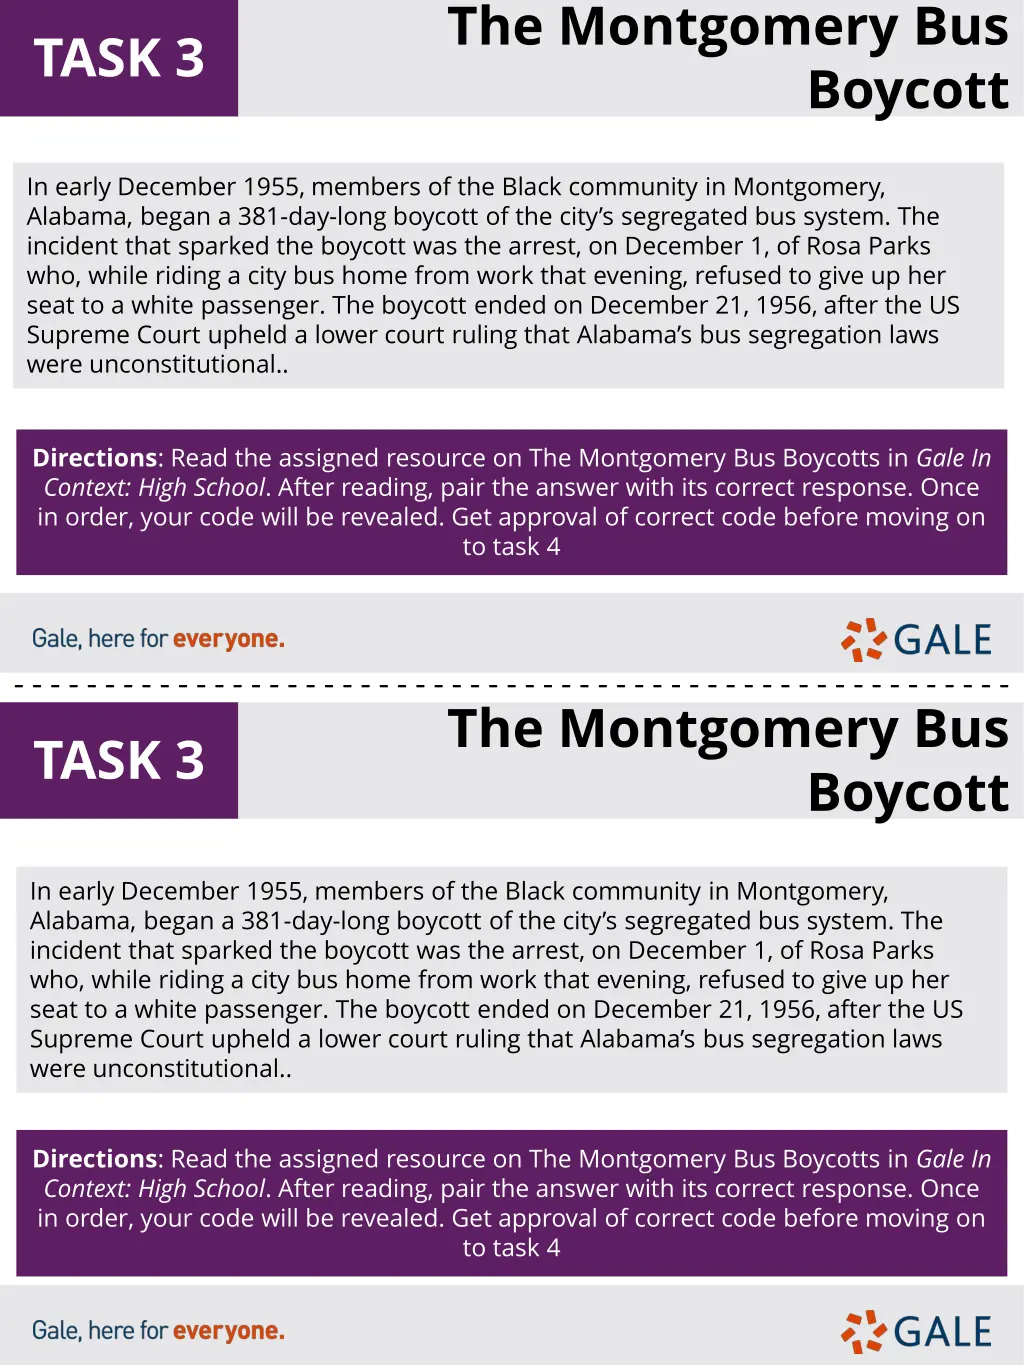 the montgomery bus